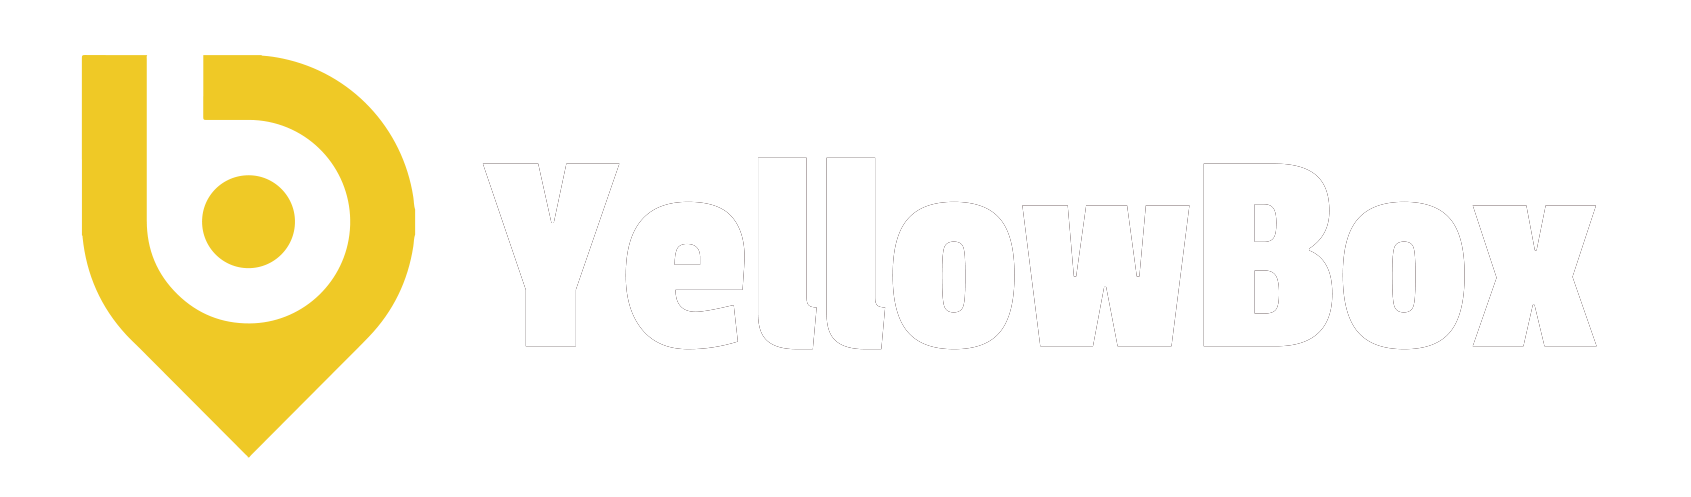 YellowBox – App de transporte escolar